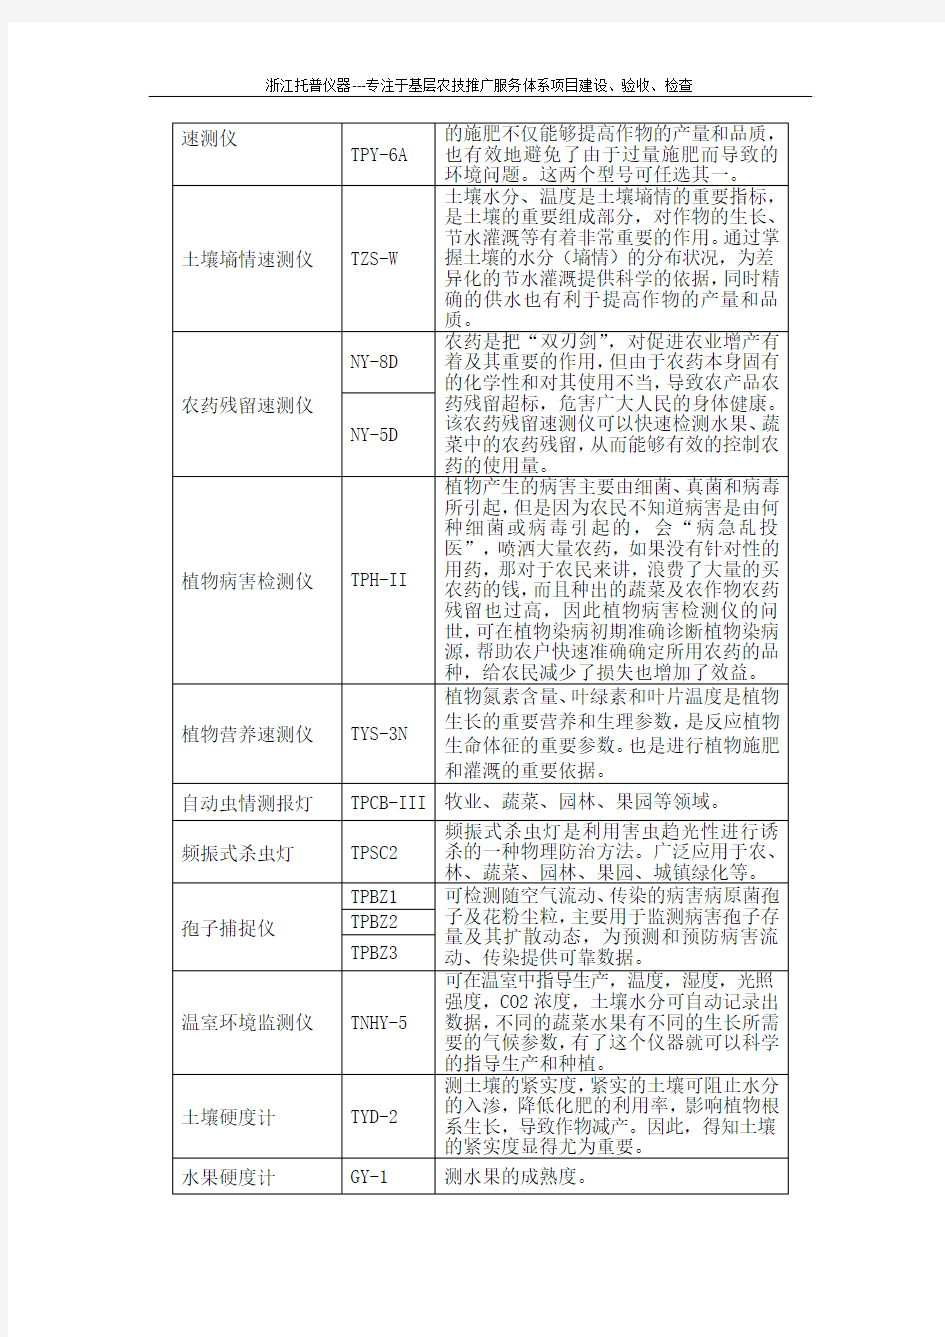 青海省基层农技推广服务体系条件建设项目仪器配置清单